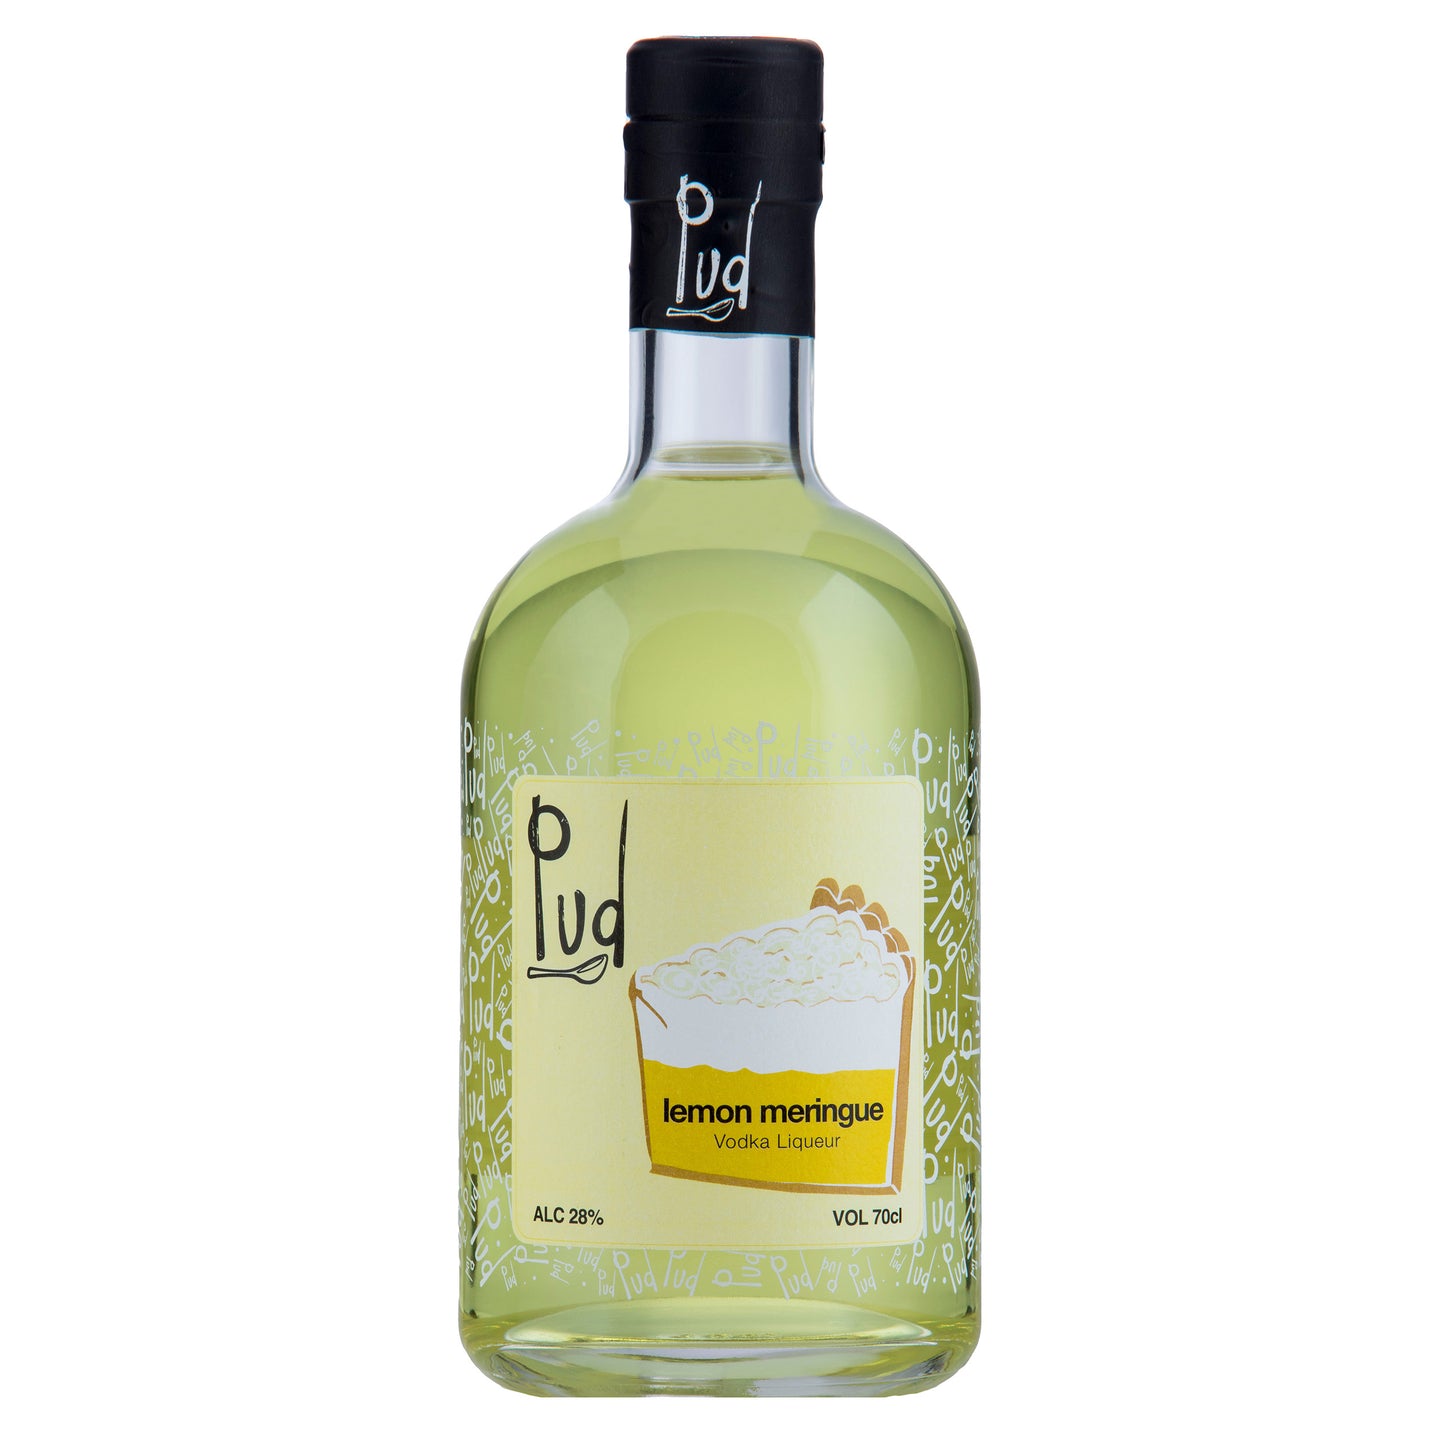 Pud Lemon Meringue Vodka Liqueur 70cl